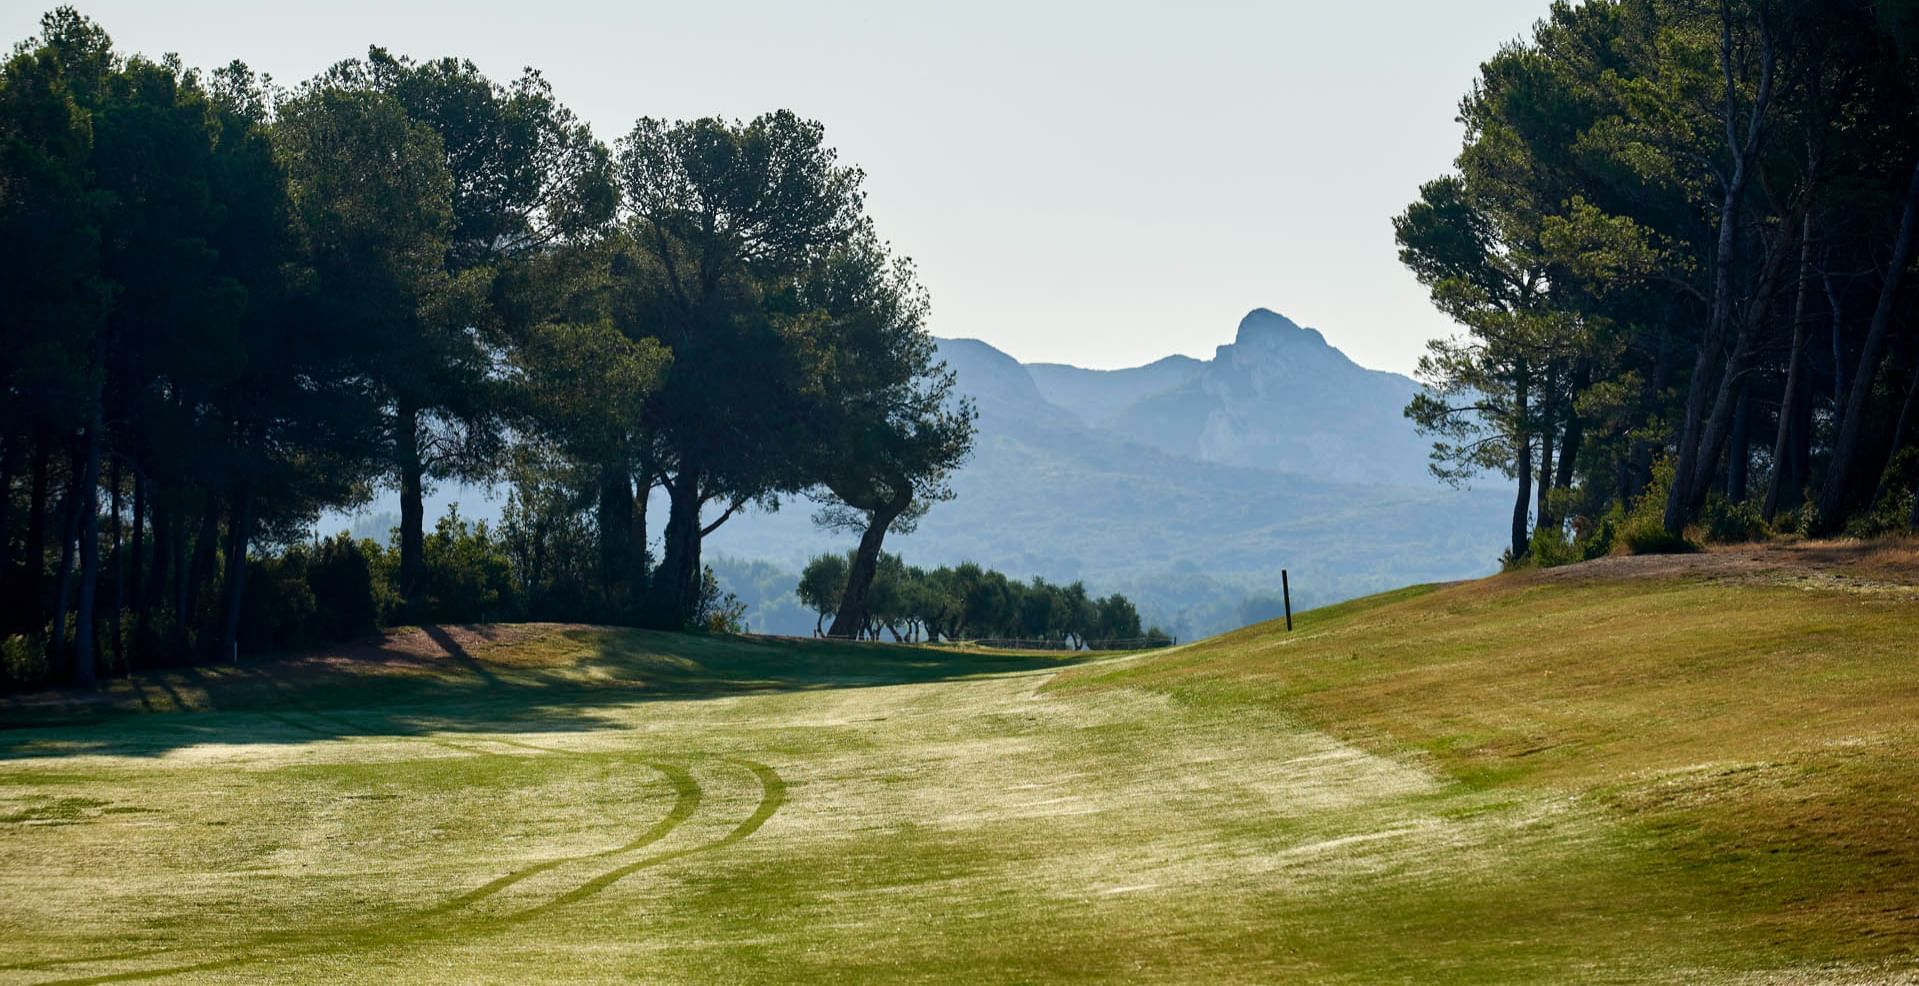 Landscape view of Golf course & mountains, Domaine de Manville